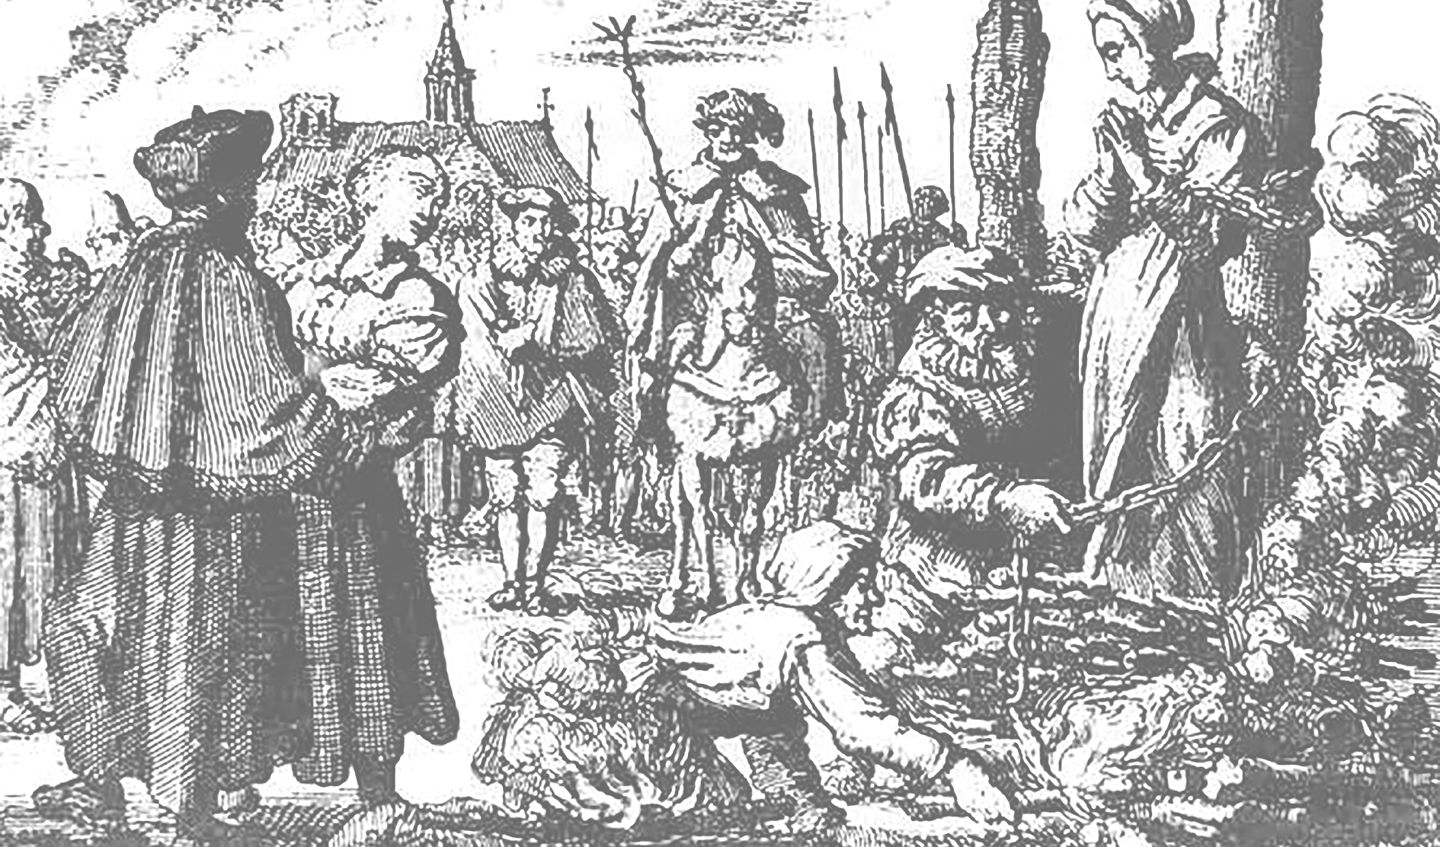 Deze afbeelding uit de Martelaarsspiegel van Van Braght wordt vaak gebruikt als een voorbeeld van heksenverbranding. Het gaat hier echter om de terechtstelling van ketters, de wederdopers Maria van Beckum en haar schoonzuster Ursel (Jan Luyken)